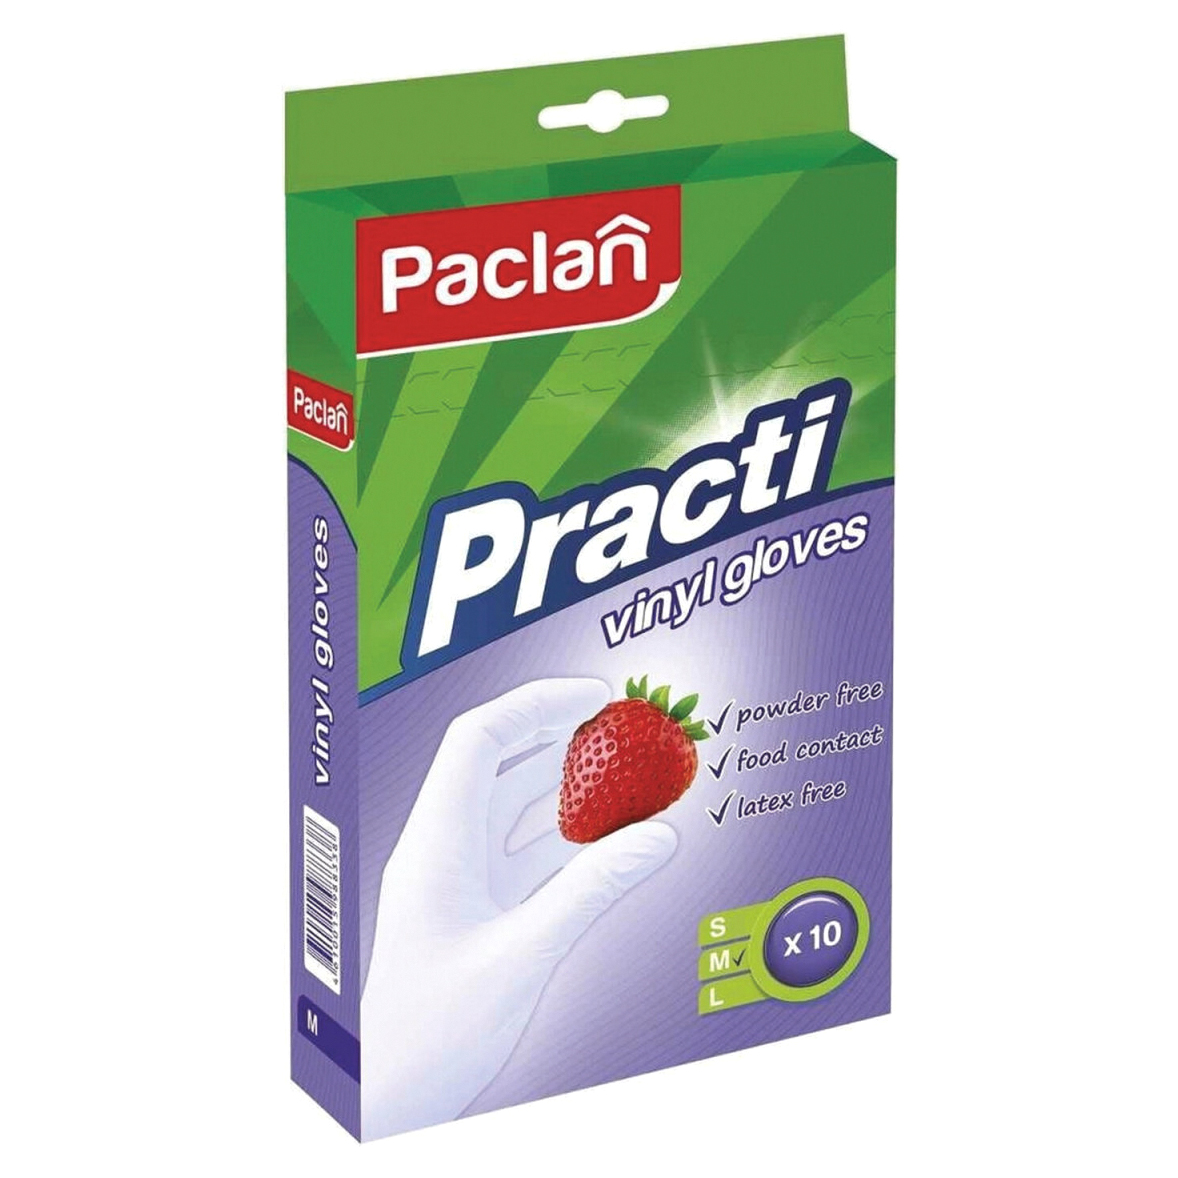 Перчатки Paclan Practi виниловые M 10 шт перчатки хозяйственные lomberta экстра прочные s